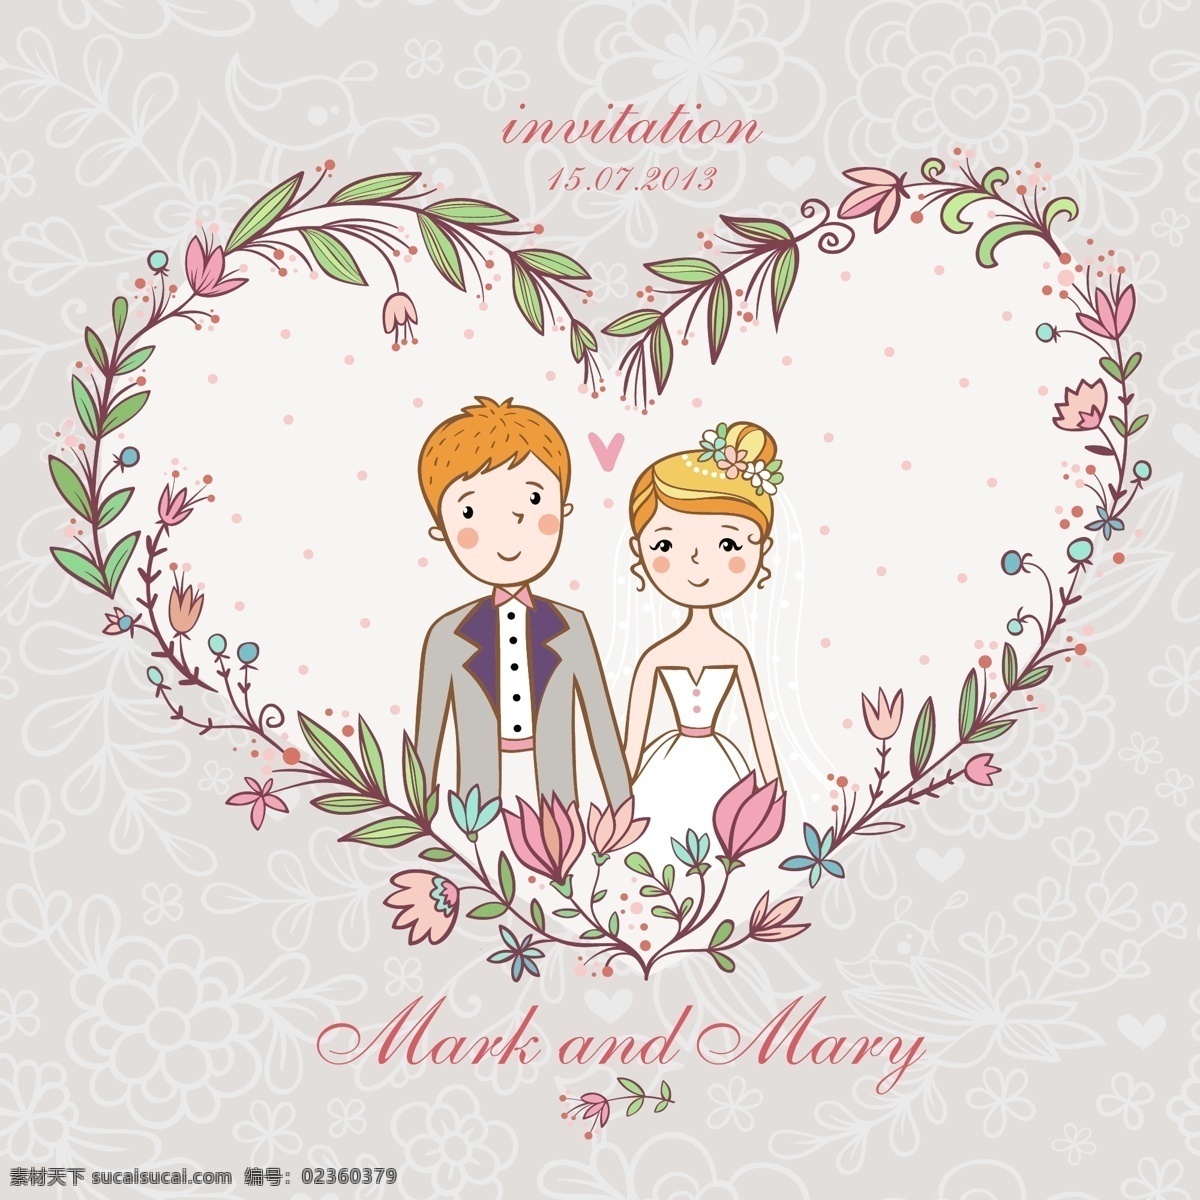 婚礼 封面 主题 矢量 模板下载 男人 女人 卡通 漫画 爱心 紫色 爱情 背景 其它节 节日素材 矢量素材